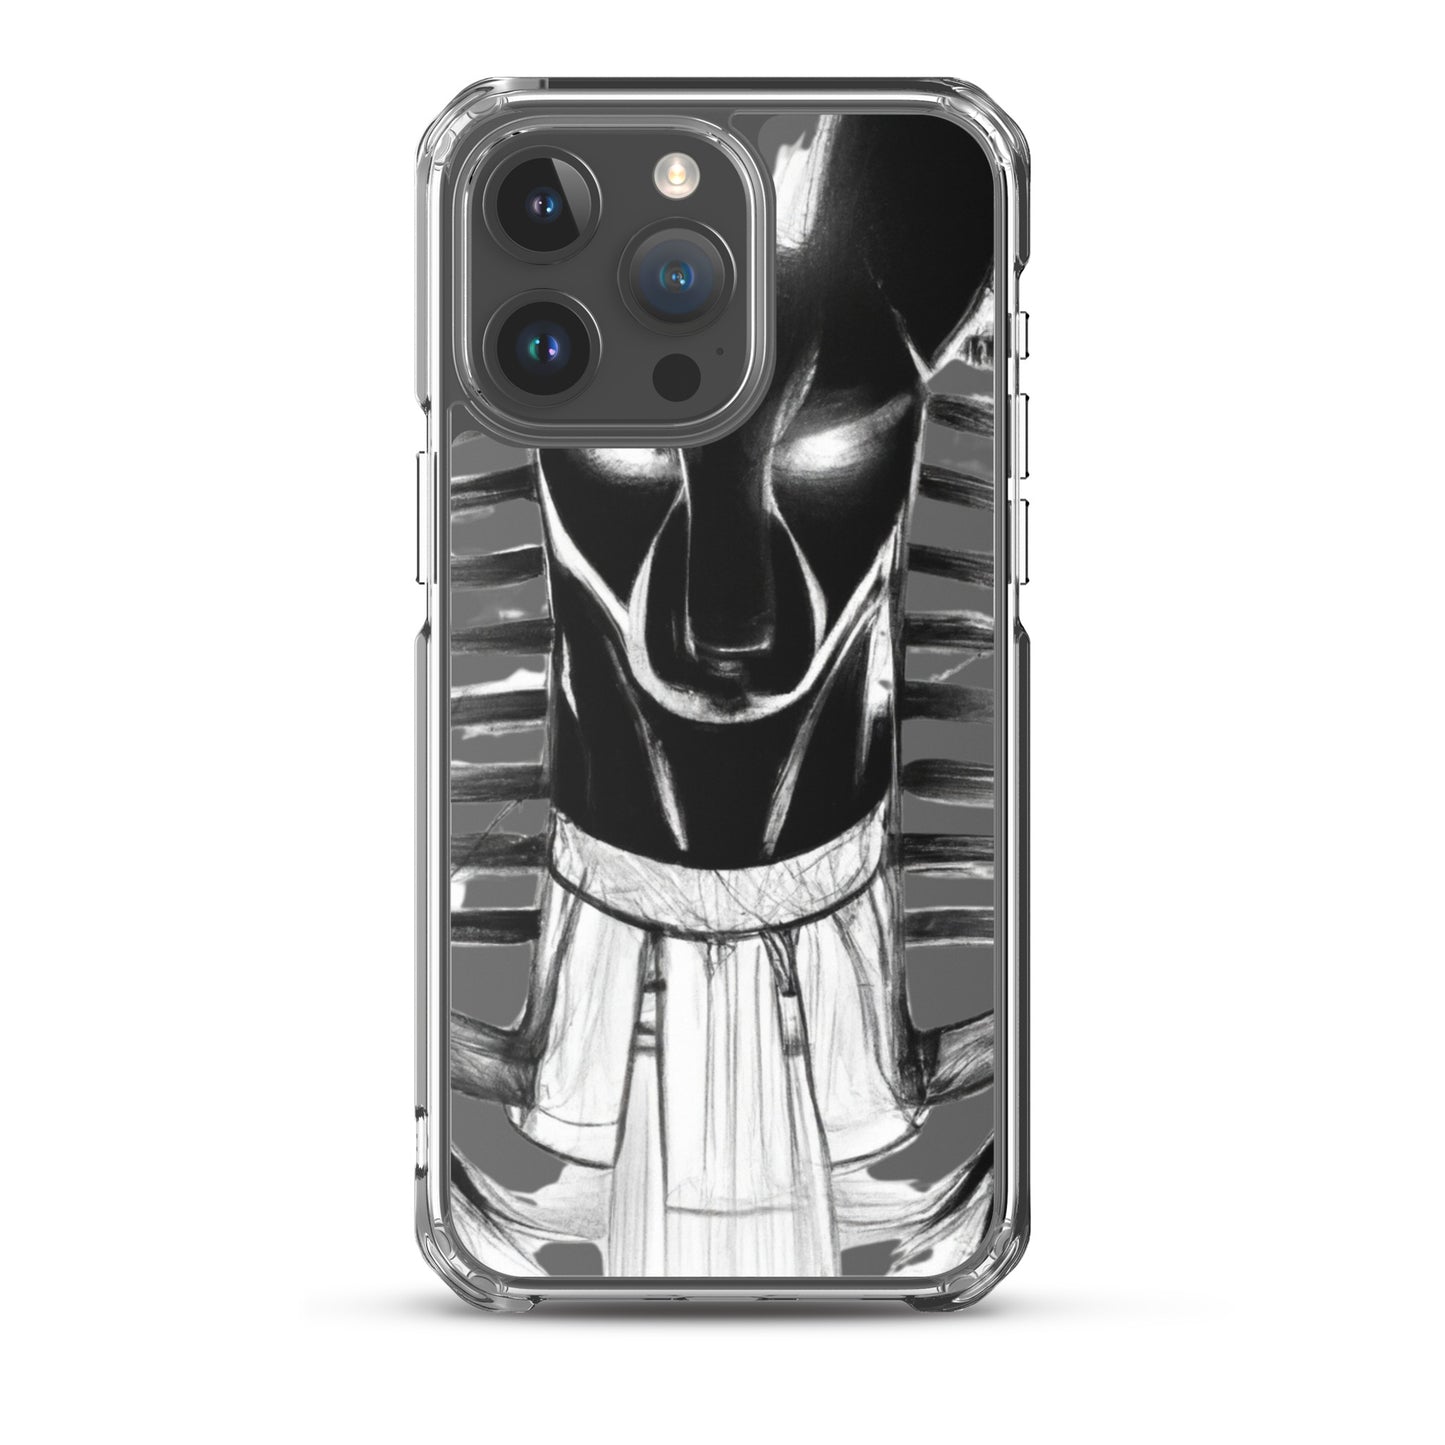 Anubis IPhone Case